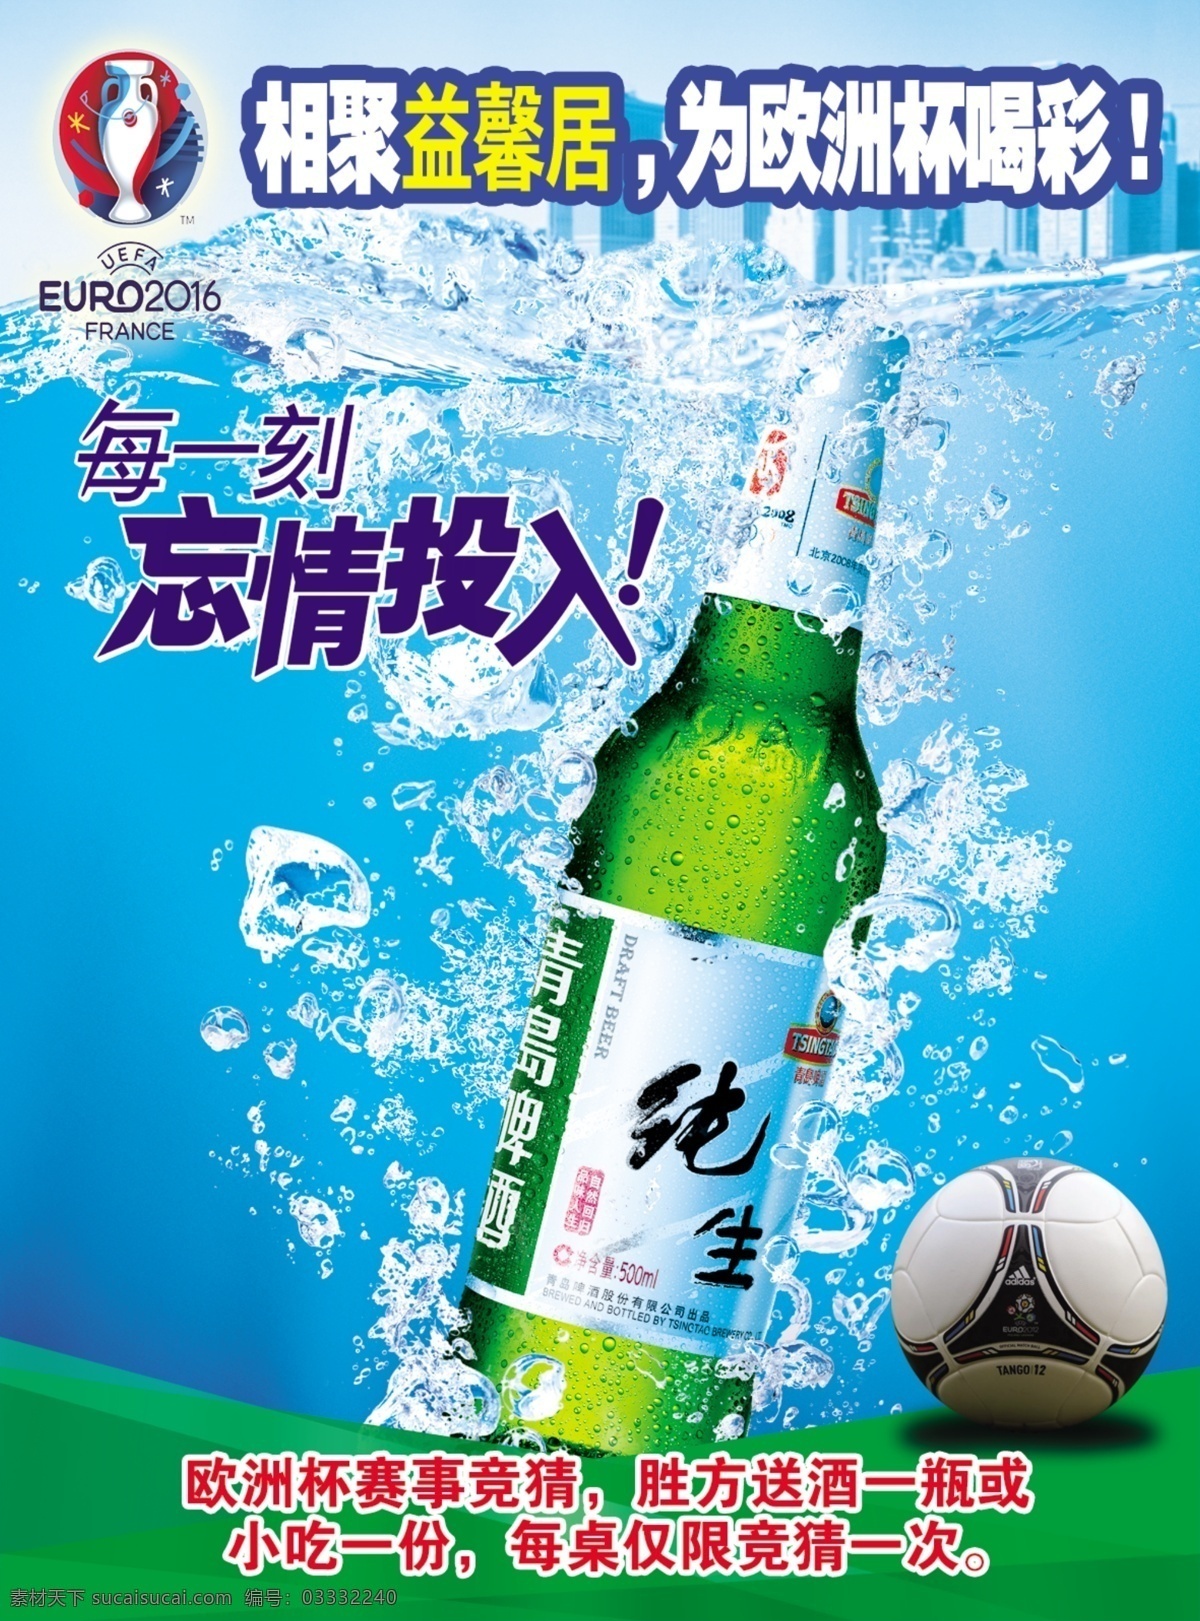 2016 欧洲杯 赛事 海报 欧洲杯海报 青色 天蓝色